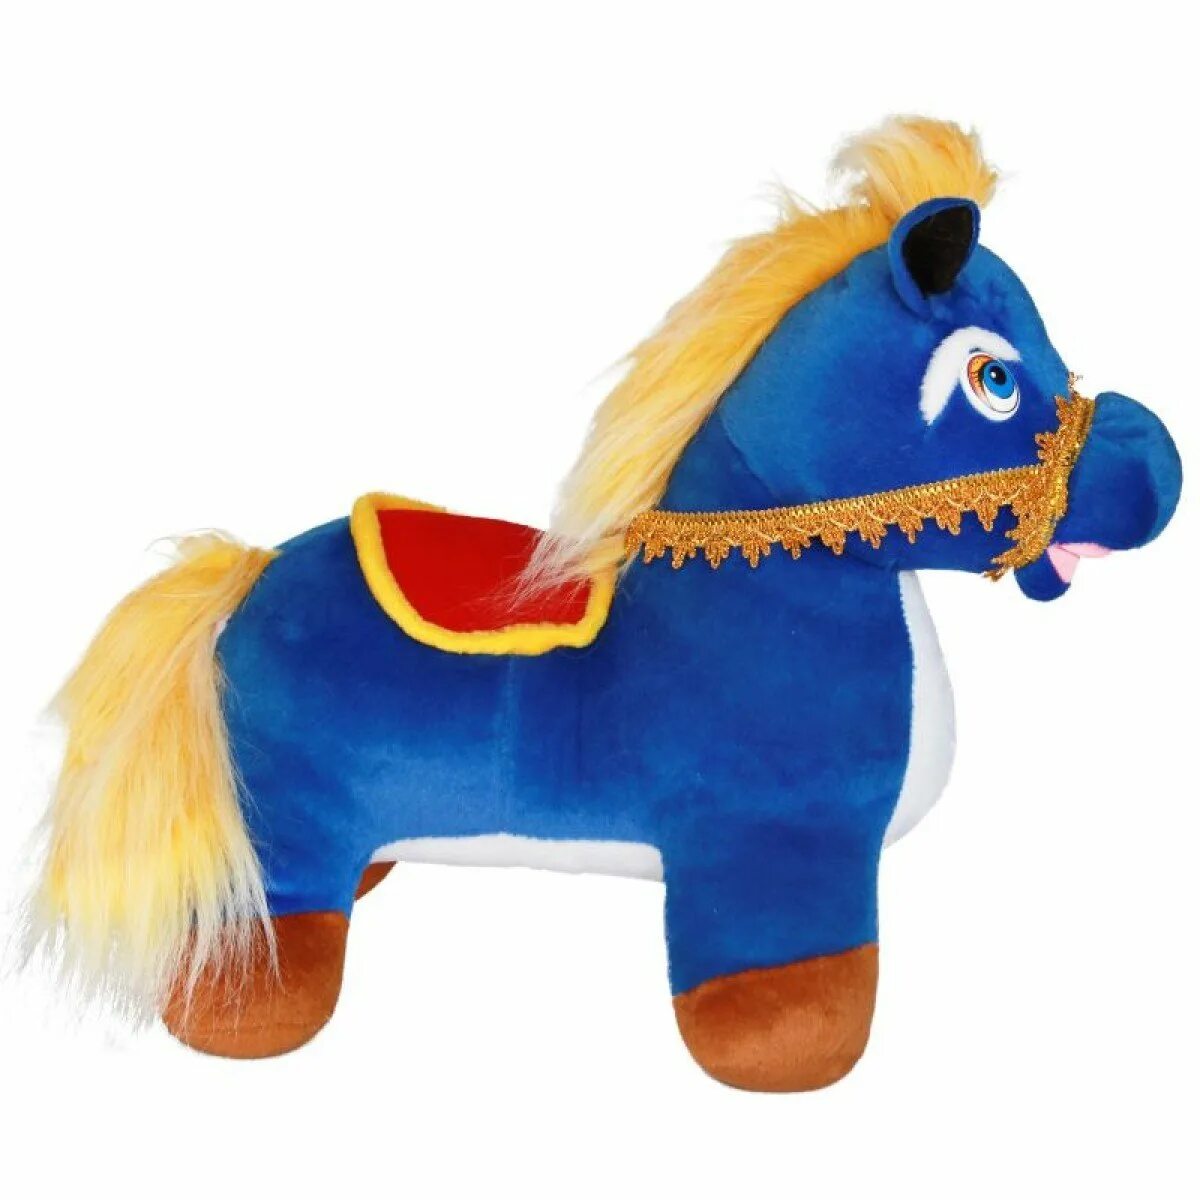 Игрушка лошадка. Конь игрушка. Детские игрушки лошадки. Мягкая игрушка конь.